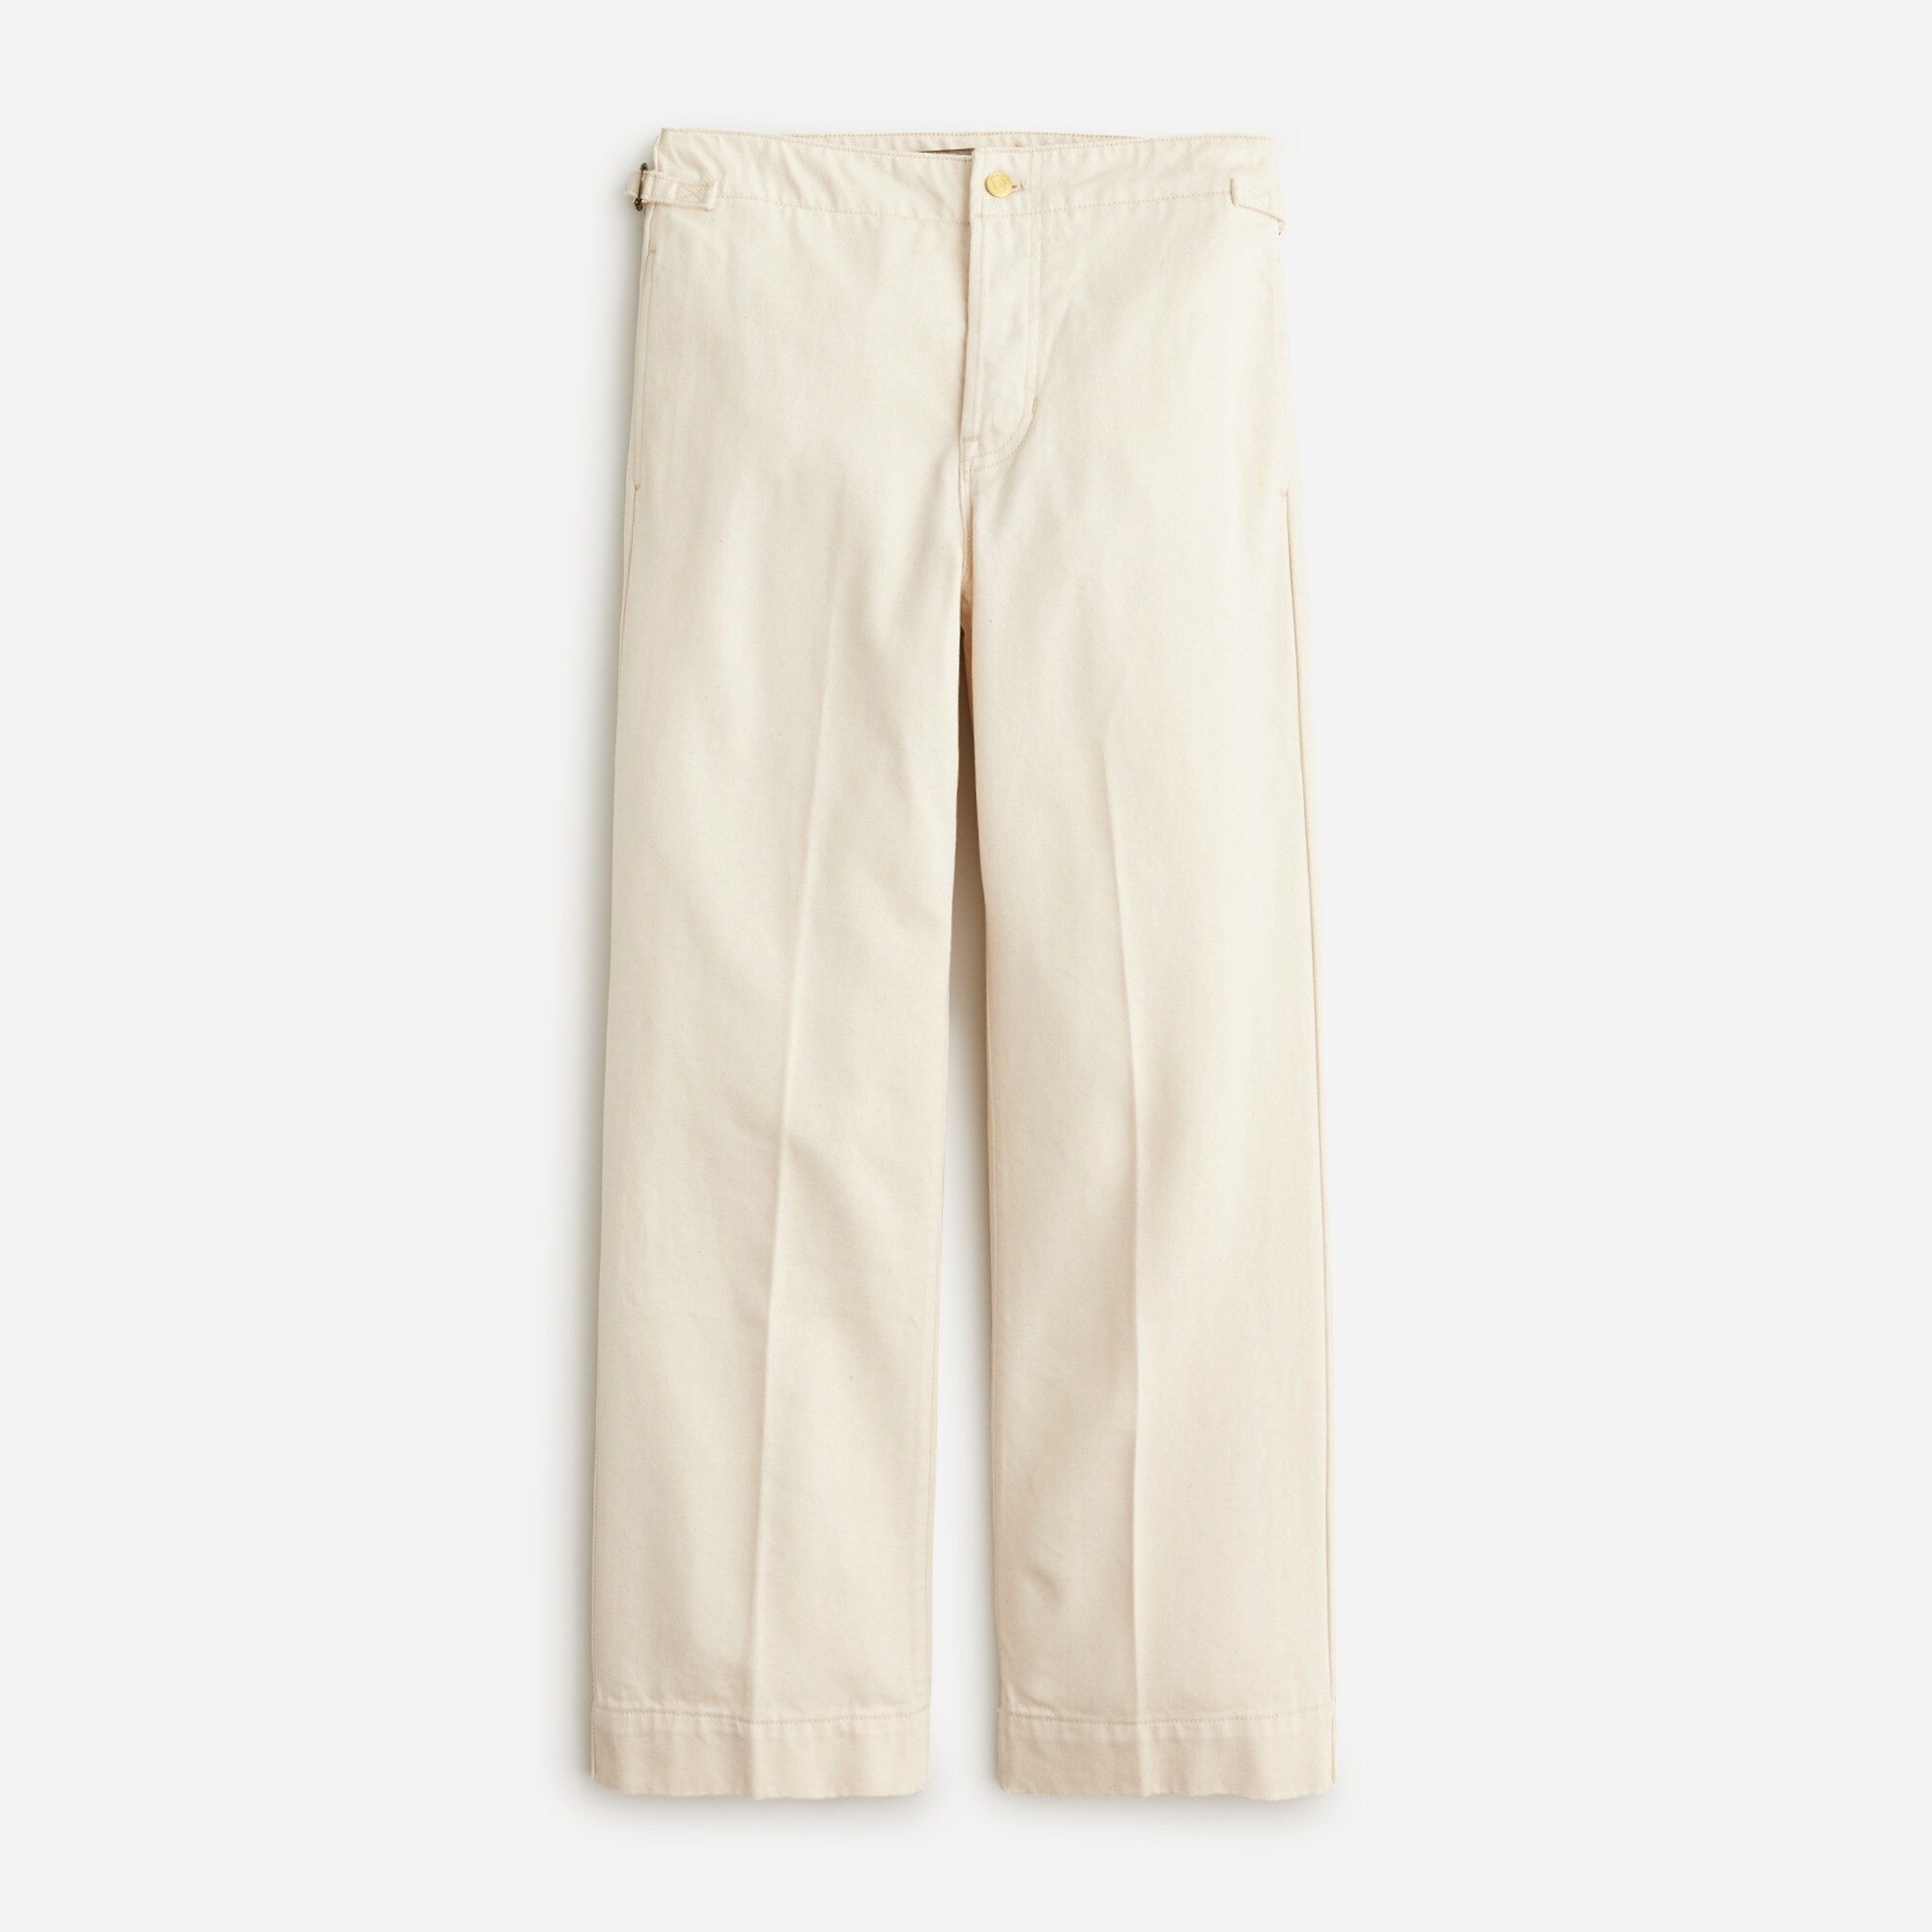  Point Sur side-tab trouser in Ecru wash